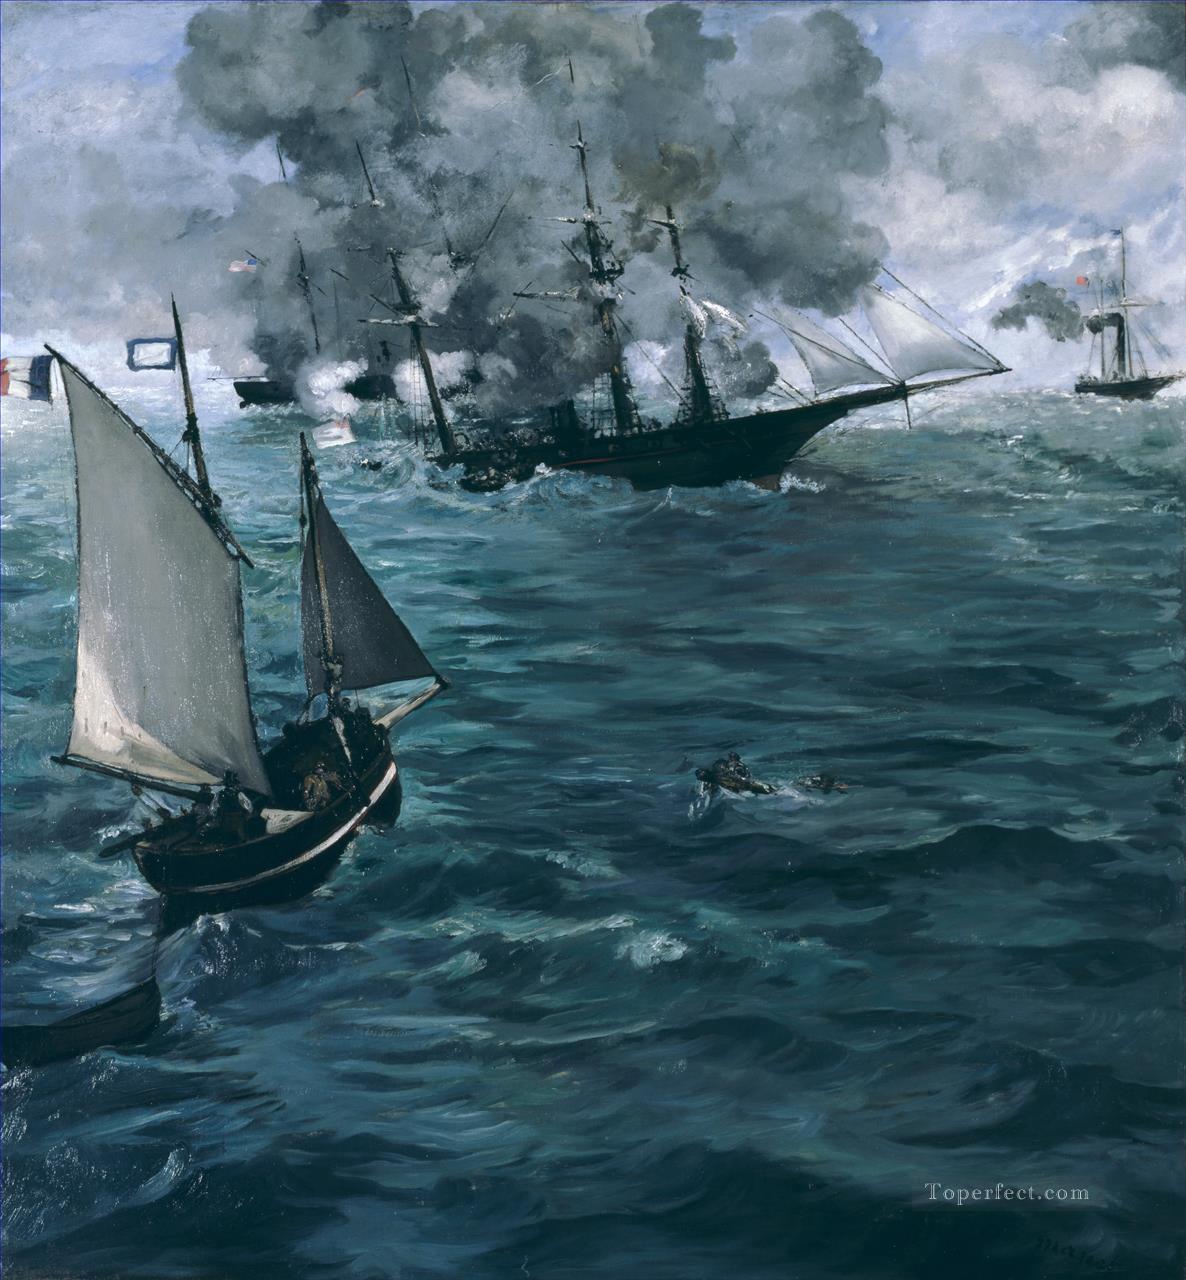 キアセージとアラバマの戦い エドゥアール・マネ油絵